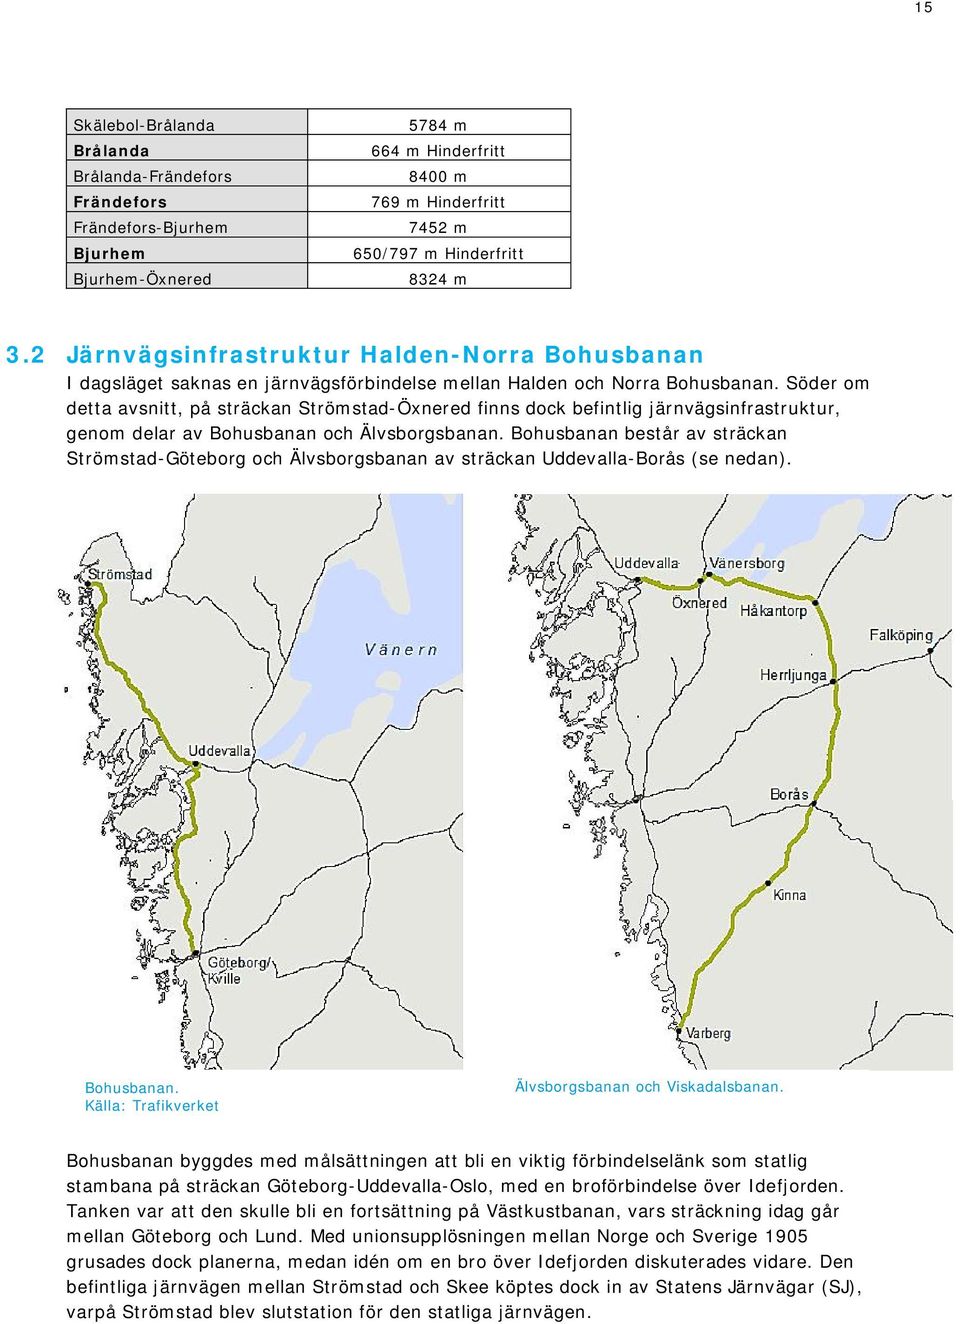 Söder om detta avsnitt, på sträckan Strömstad-Öxnered finns dock befintlig järnvägsinfrastruktur, genom delar av Bohusbanan och Älvsborgsbanan.